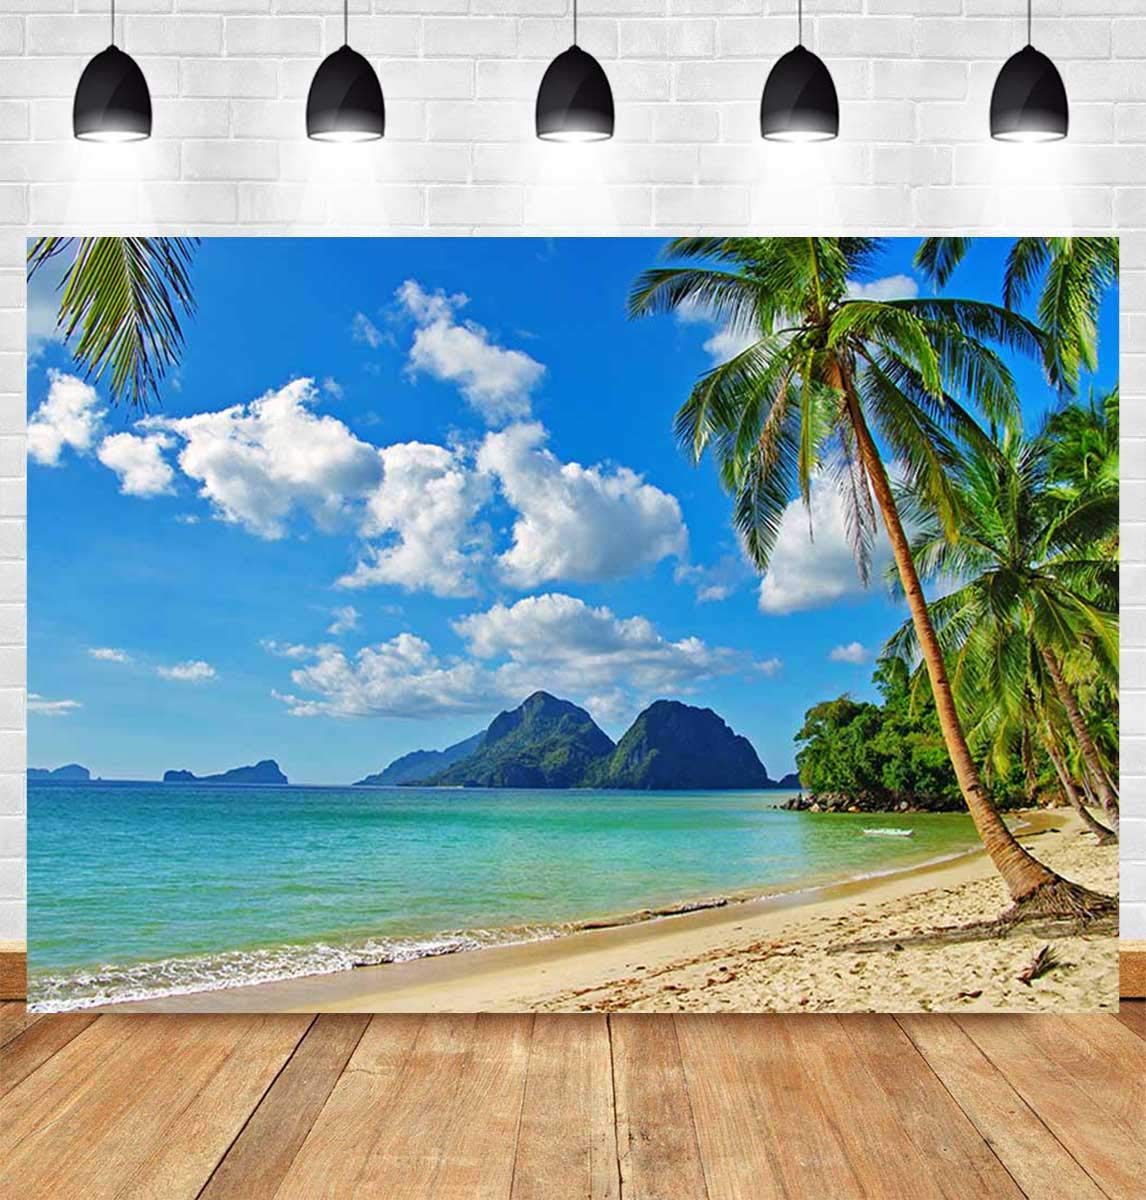 Choáng ngợp trước phông nền bãi biển tuyệt đẹp cho desktop của bạn. Với các bức ảnh bãi biển chất lượng cao này, bạn sẽ cảm thấy như mình đang ngồi trên bãi cát trắng mịn, được hít thở không khí trong lành và ngắm nhìn biển xanh lấp lánh trước mắt.